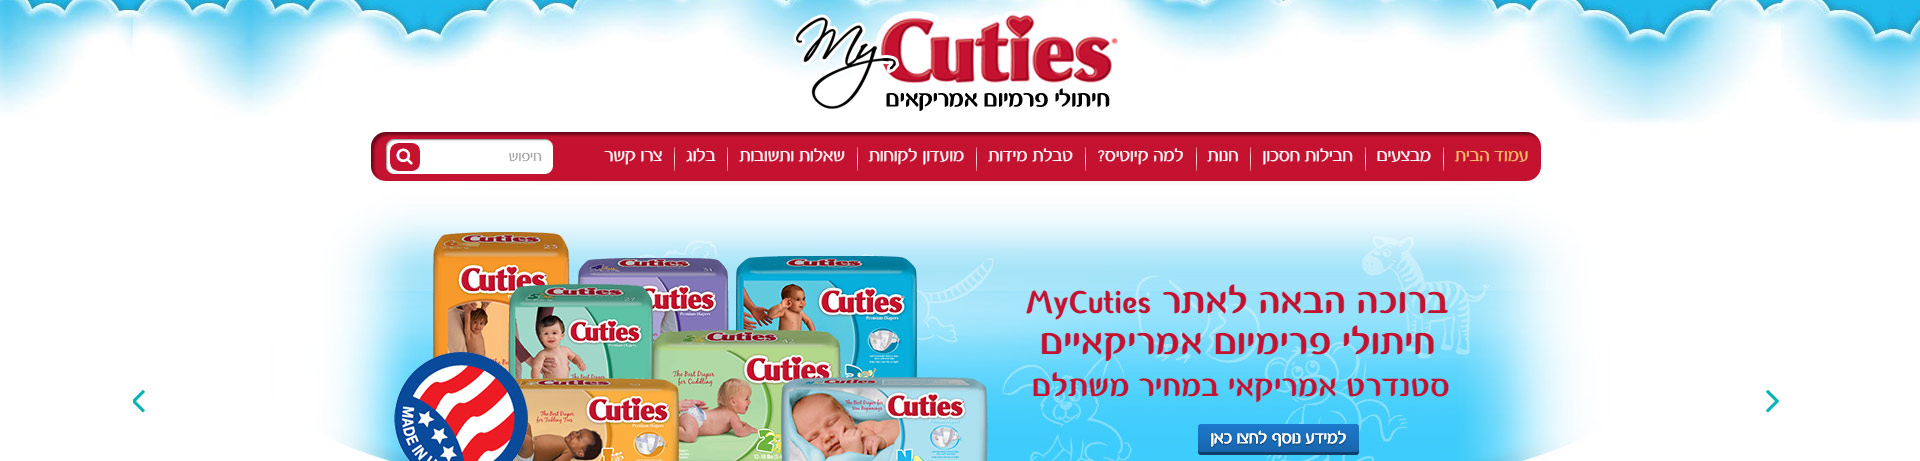 cuties- עיצוב ופיתוח אתר אינטרנט עם חנות מסוג היקהשופ